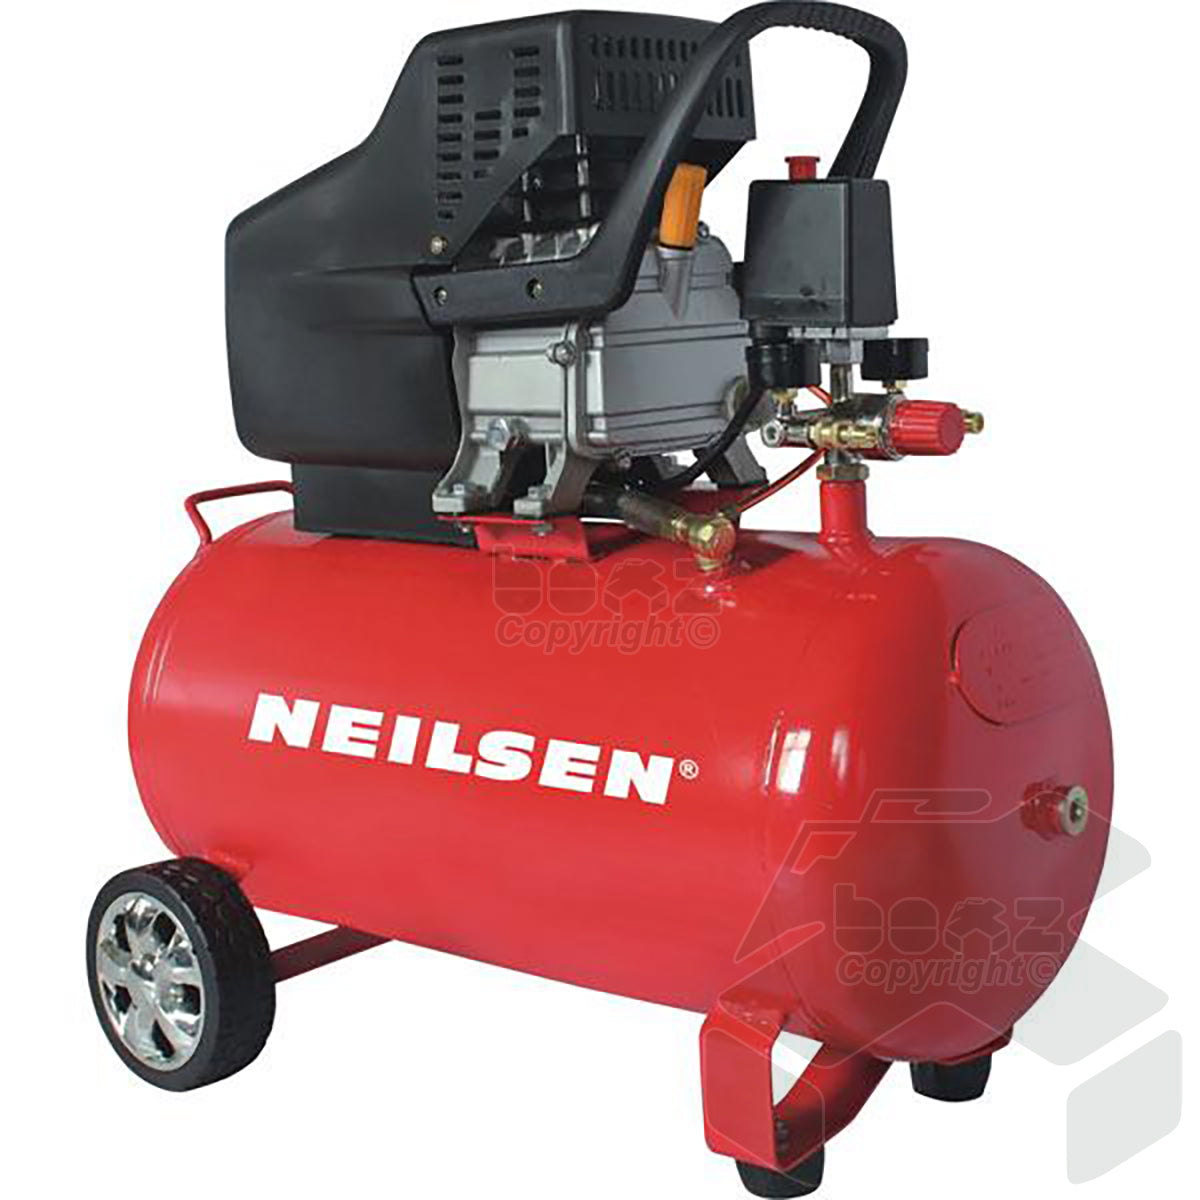 Neilsen Air Compressor 2.0 Hp 50 Litre